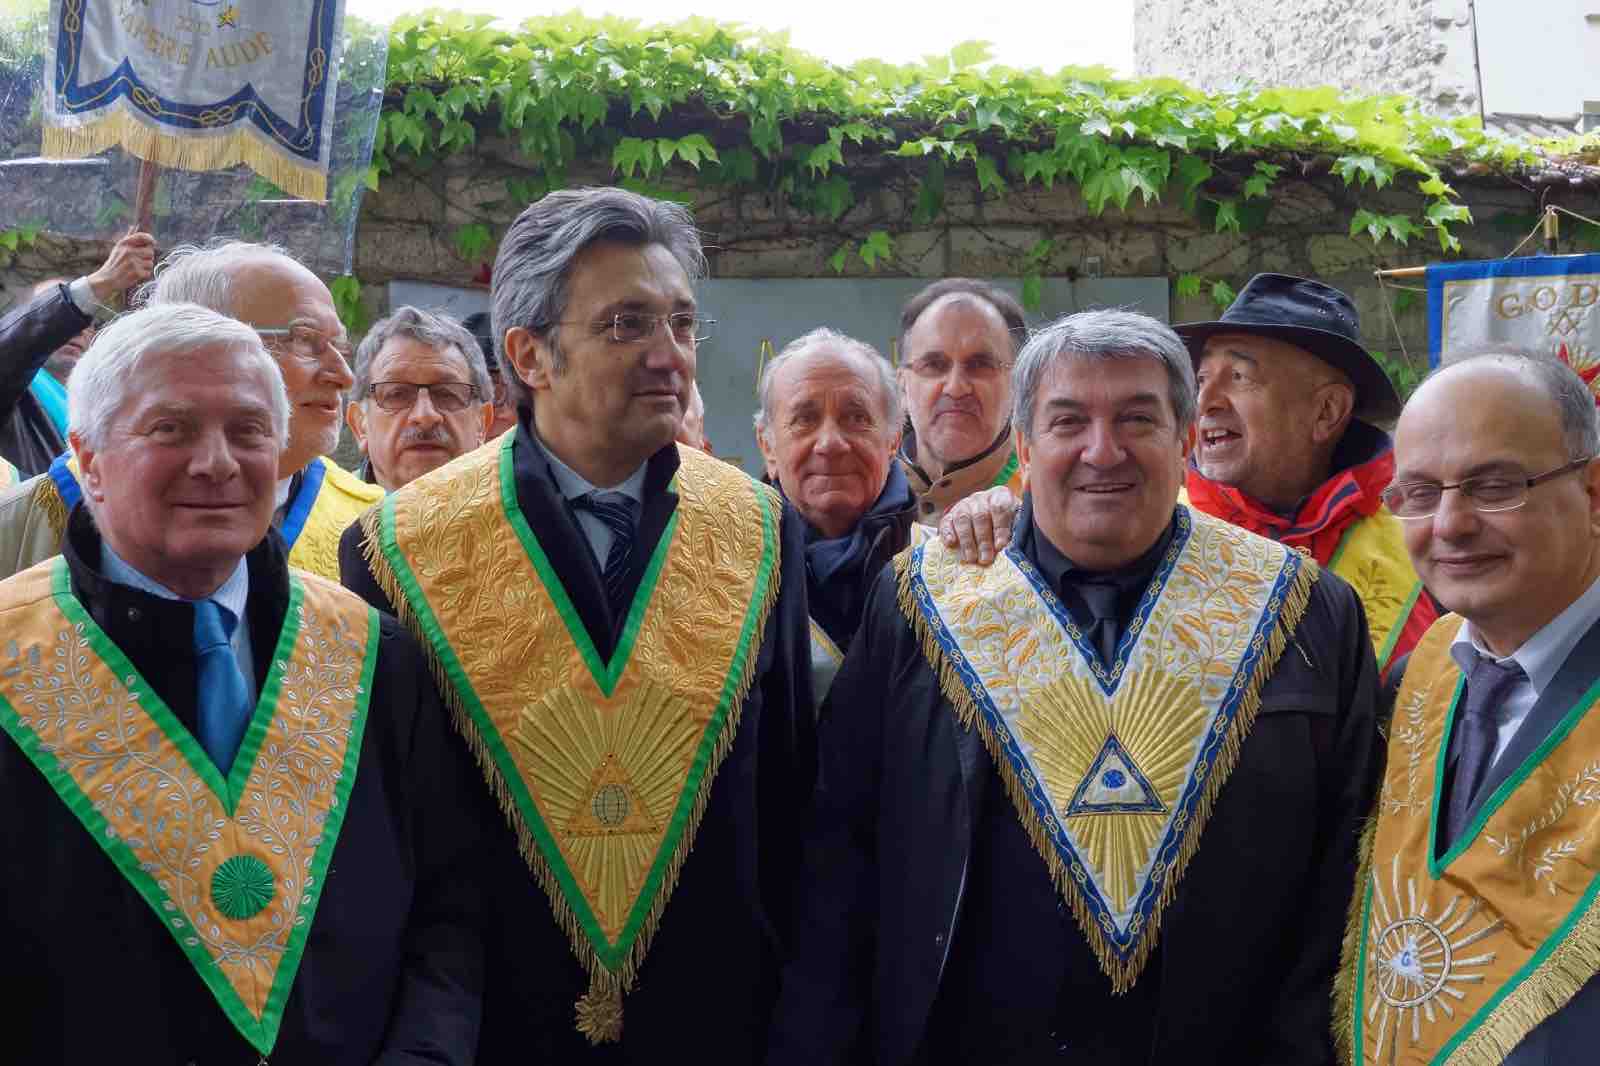 Los masones representan el 20% de los diputados de la Asamblea Francesa